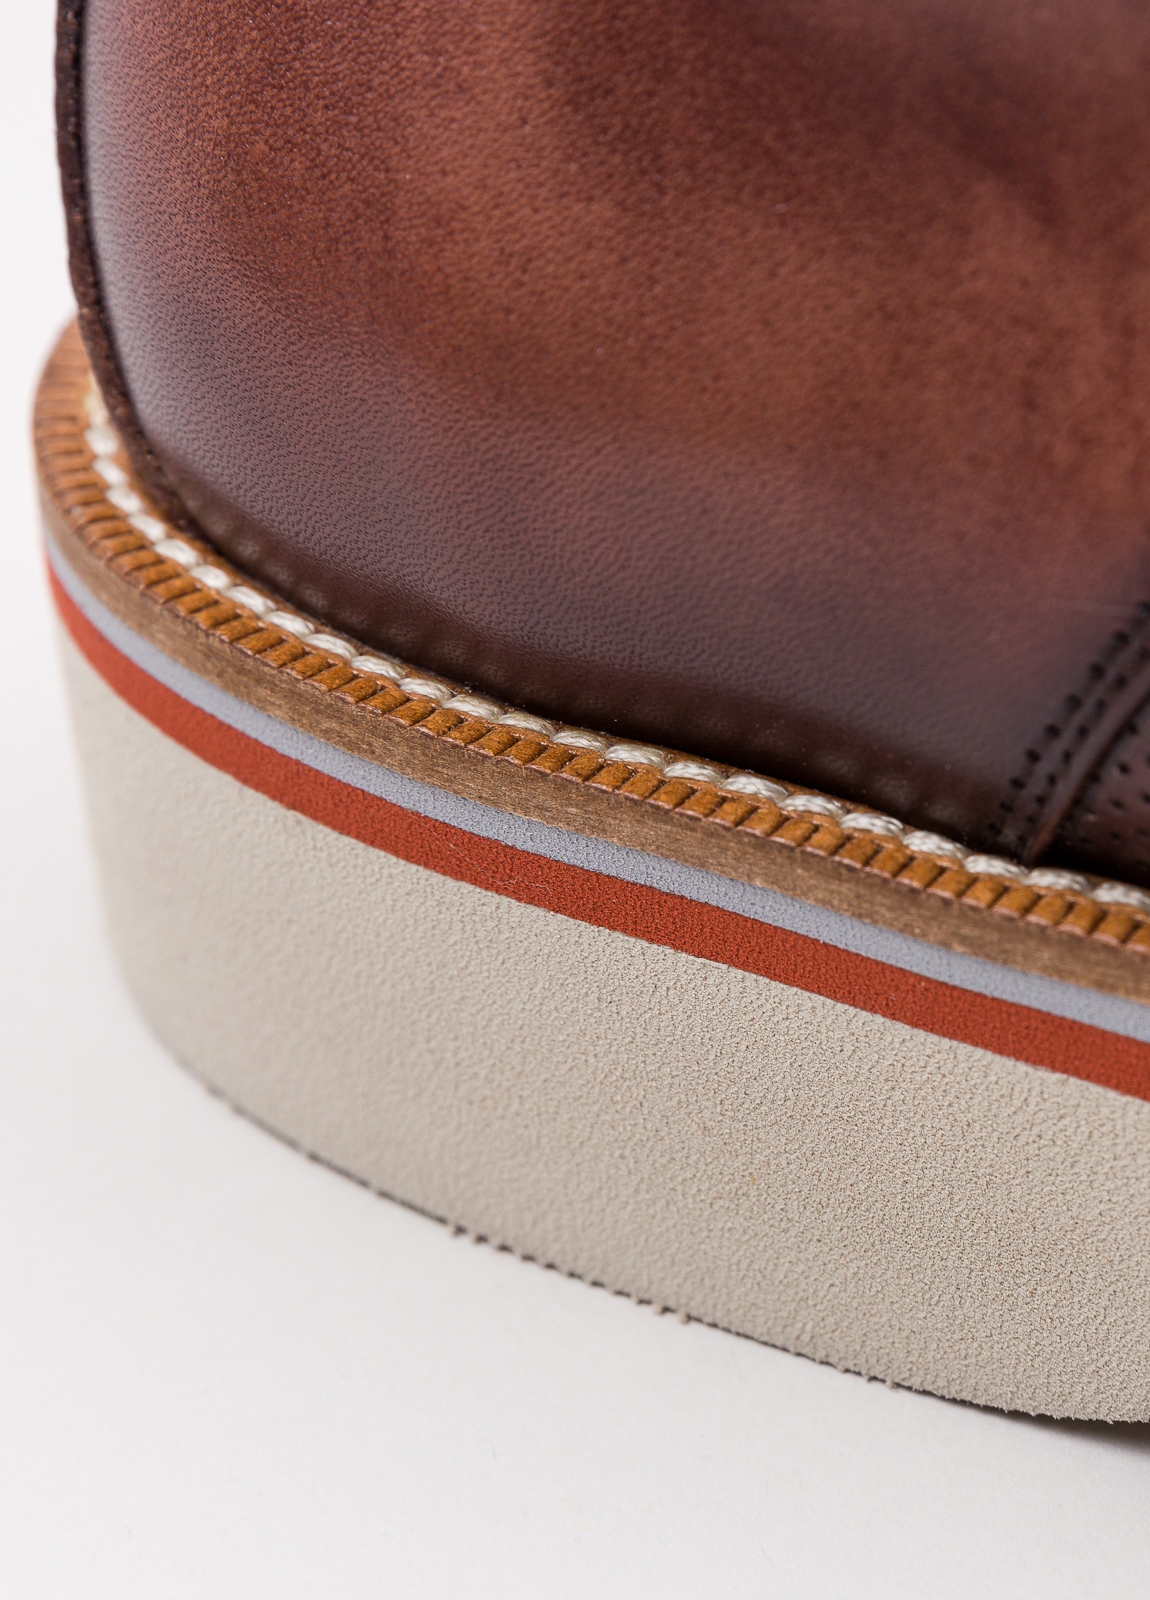 Zapato sport wear furest colección troquelado marrón - Ítem9